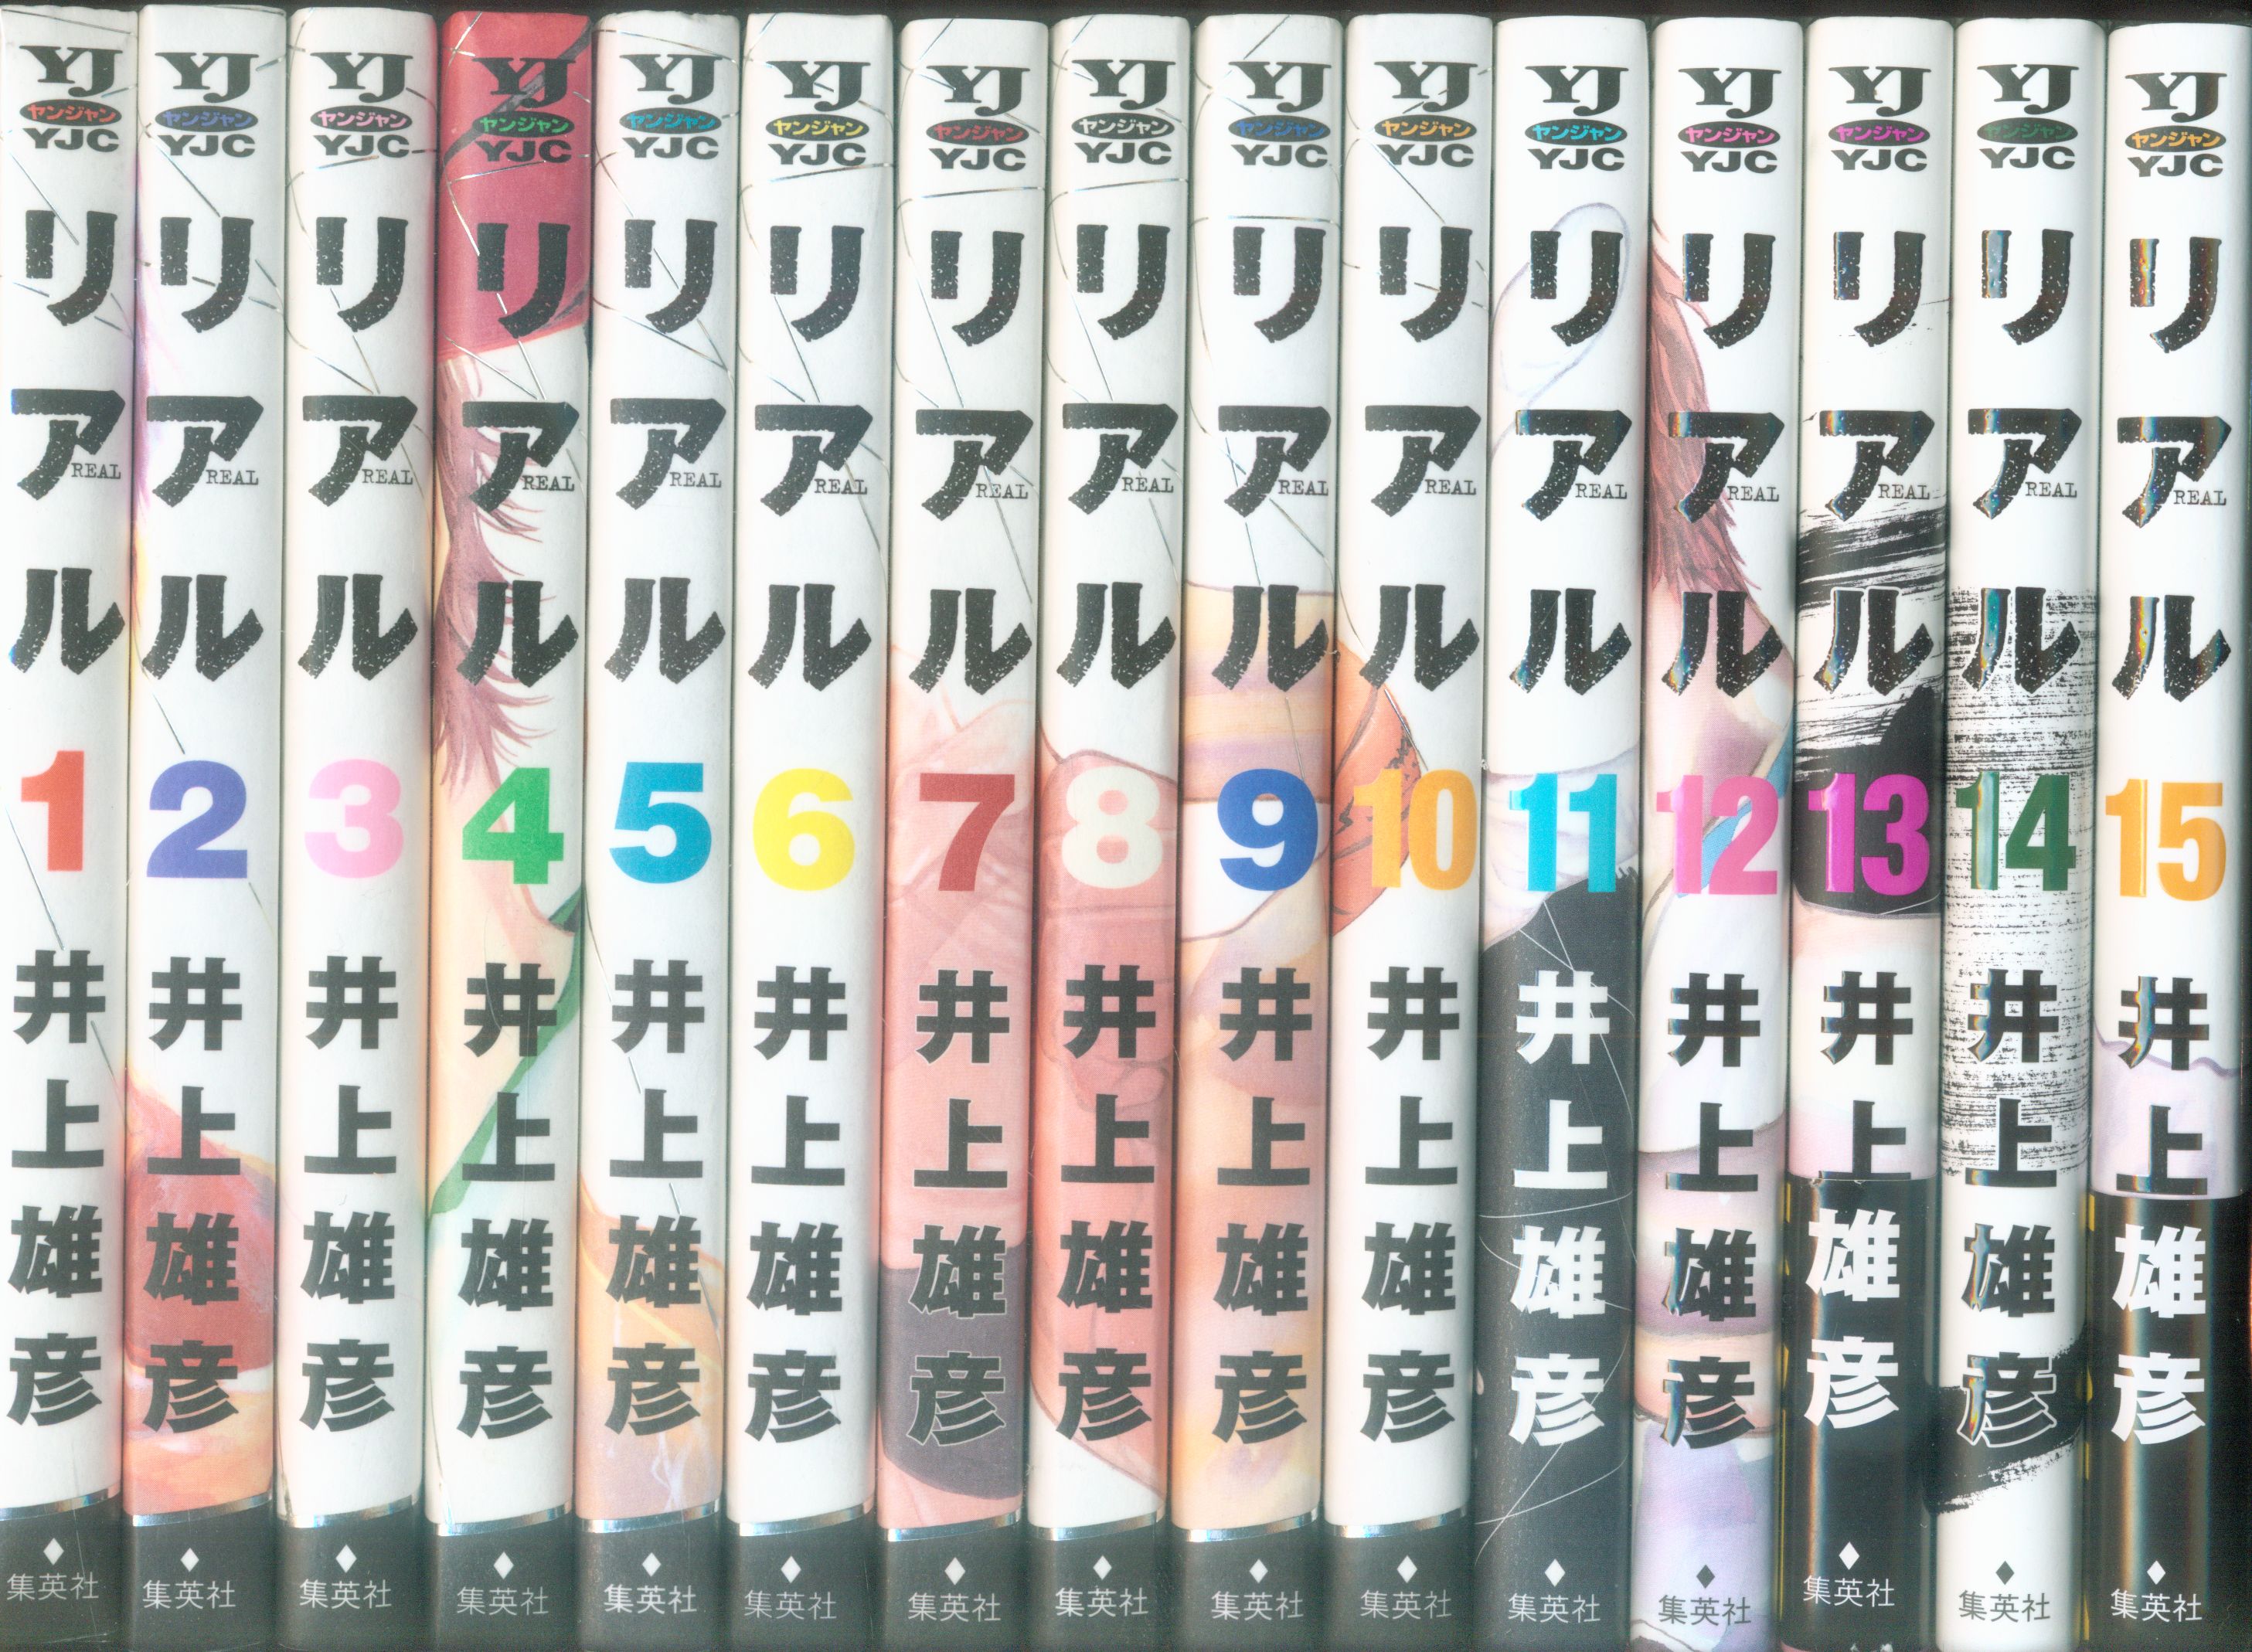 集英社 ヤングジャンプコミックス 井上雄彦 リアル 1 15巻 最新セット まんだらけ Mandarake